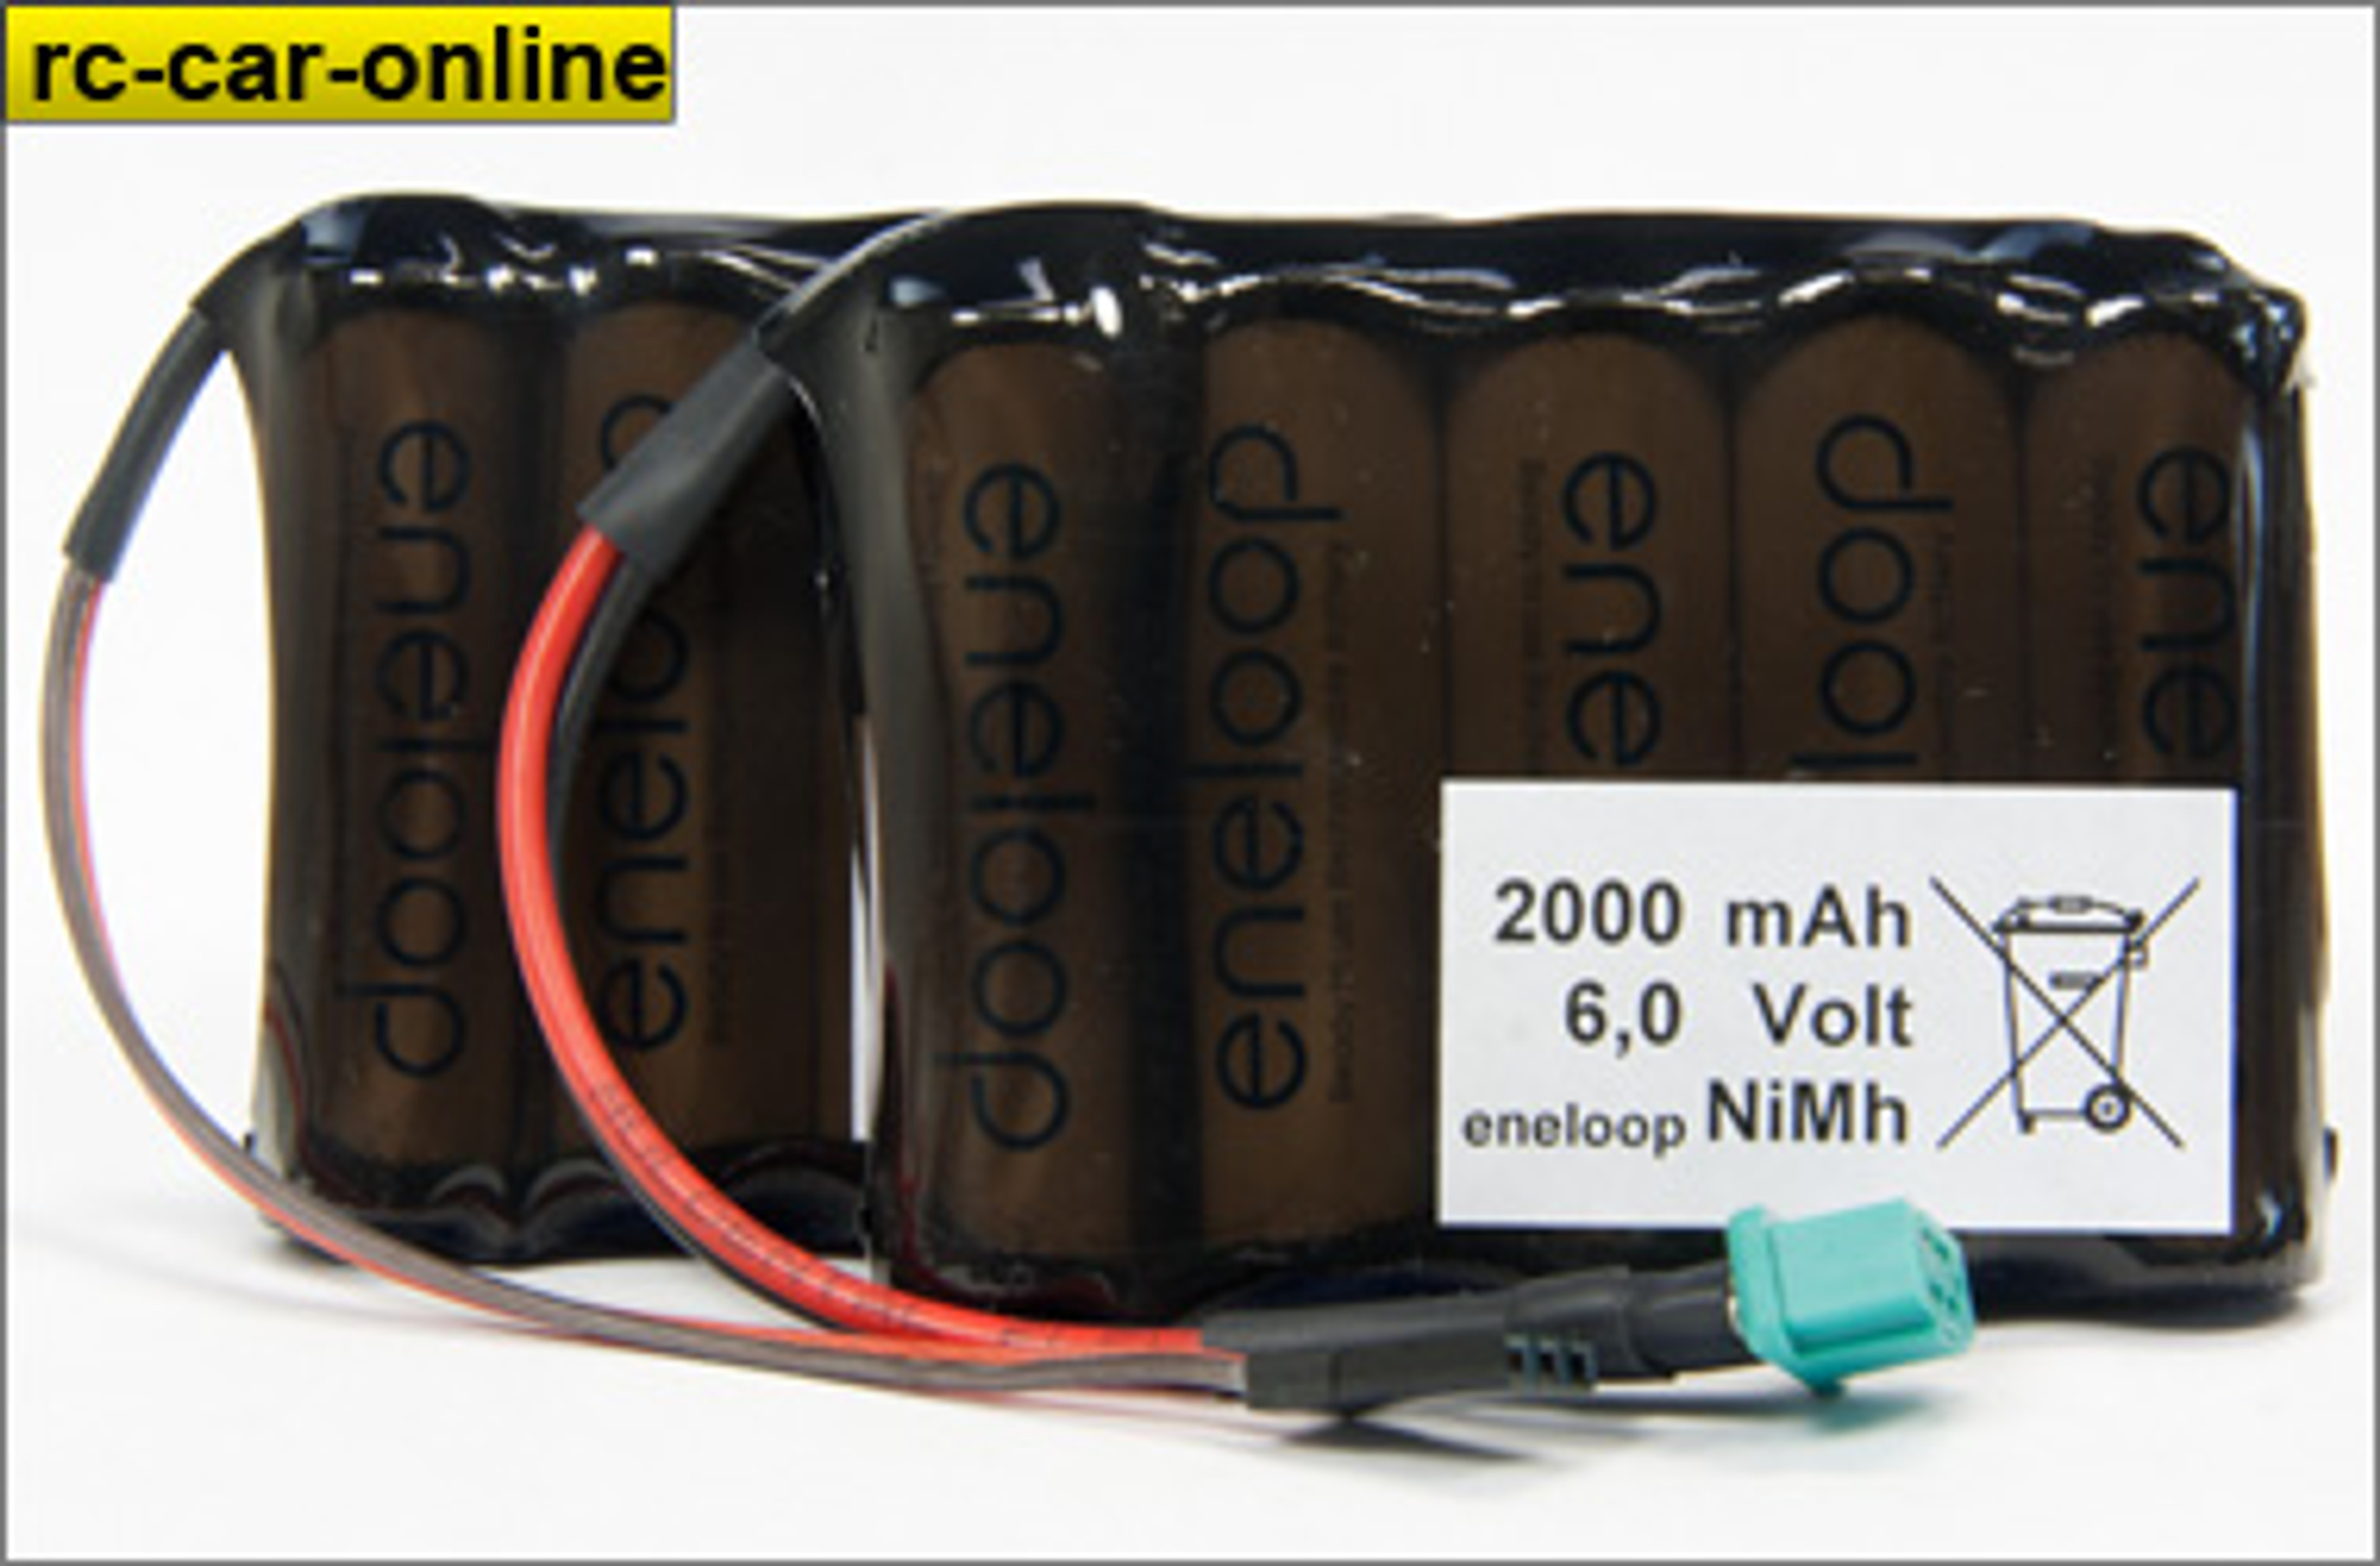 y0662 Sanyo Eneloop receiver battery 2000 mAh NiMh, 1 pce.